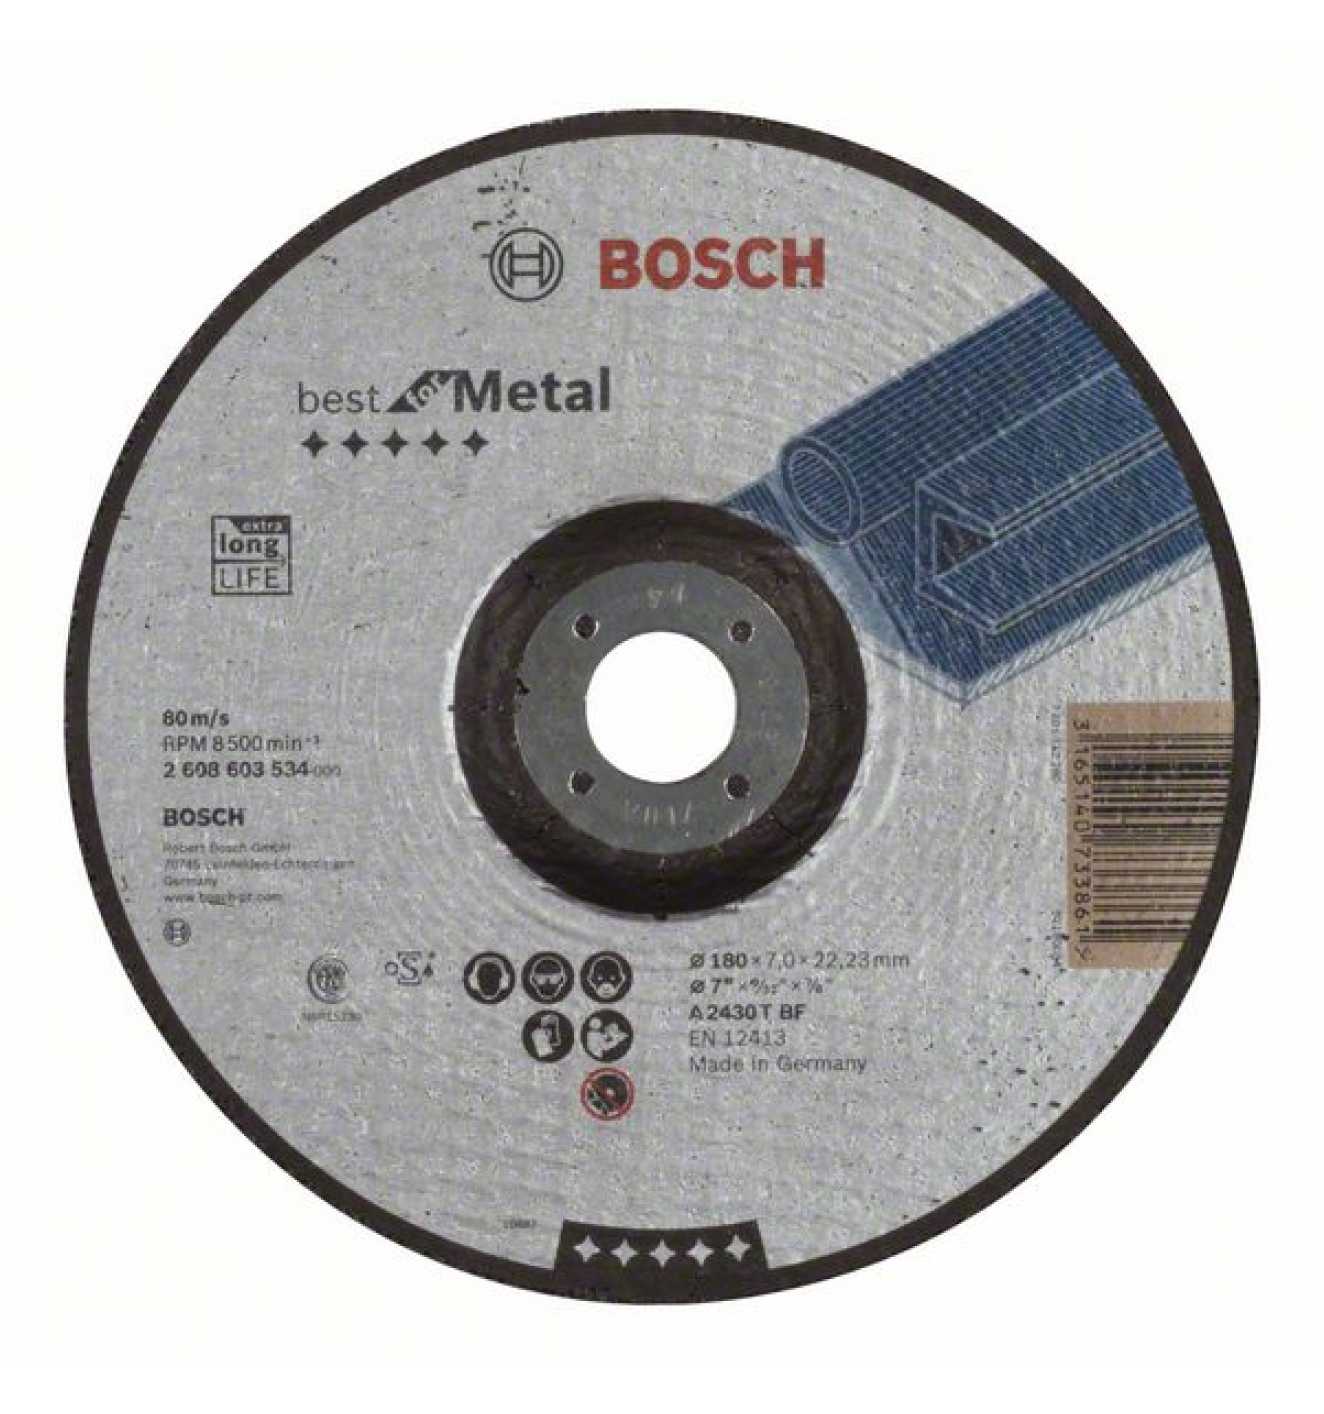 BOSCH Schruppscheibe gekröpft Best for Metal A 2430 T B 